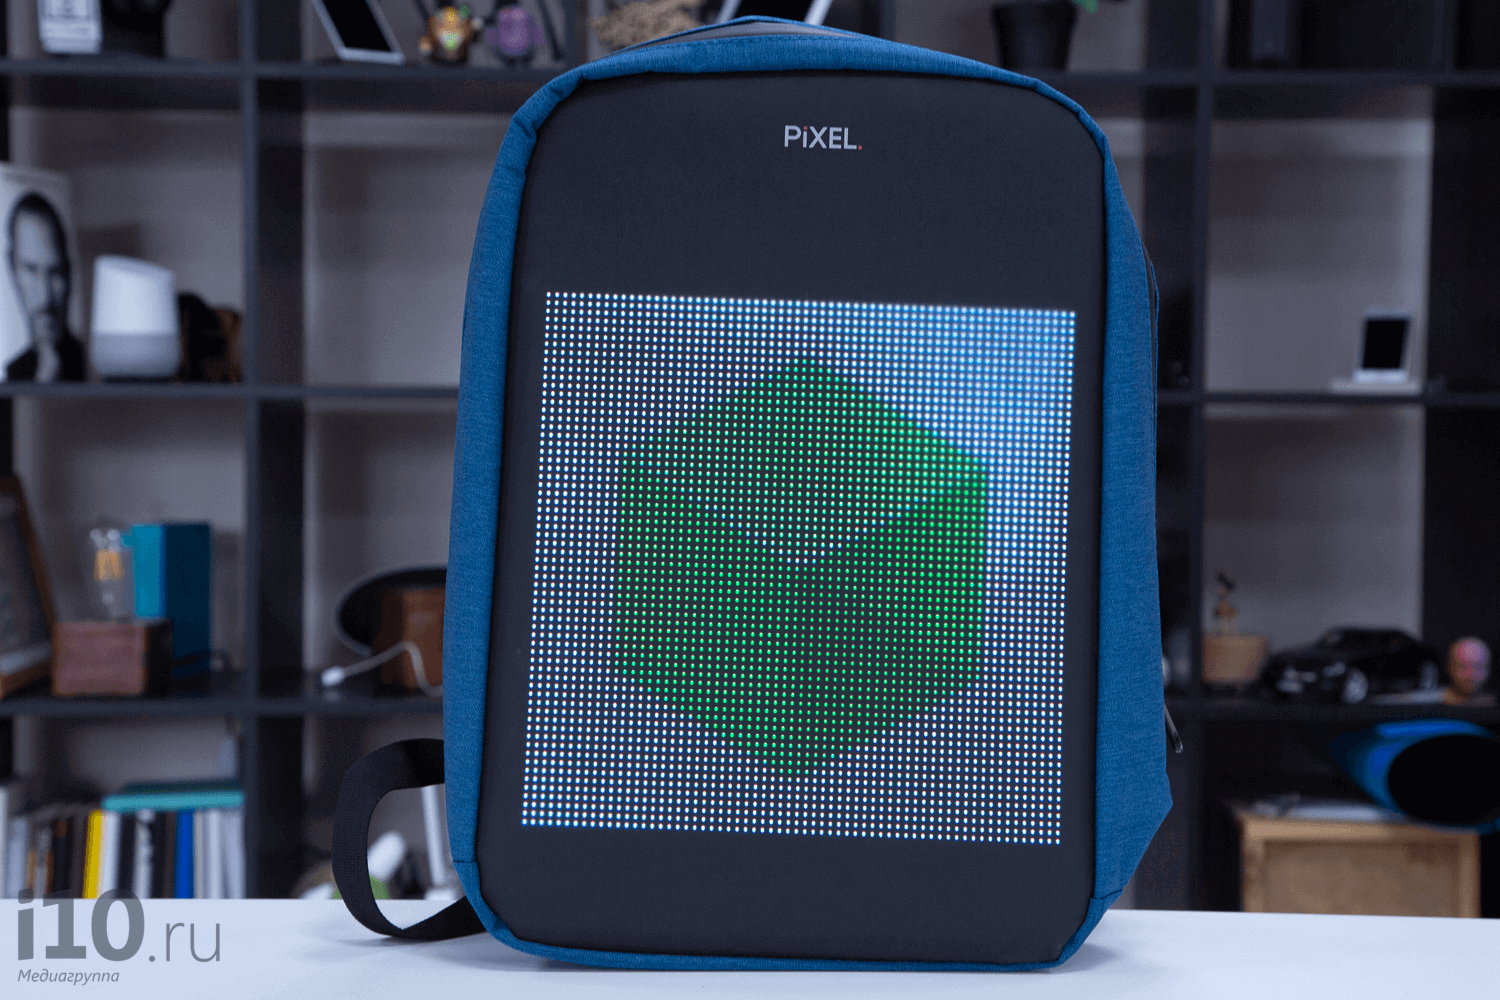 Revisión de PIXEL — en primer lugar en el mundo de las mochilas con la pantalla